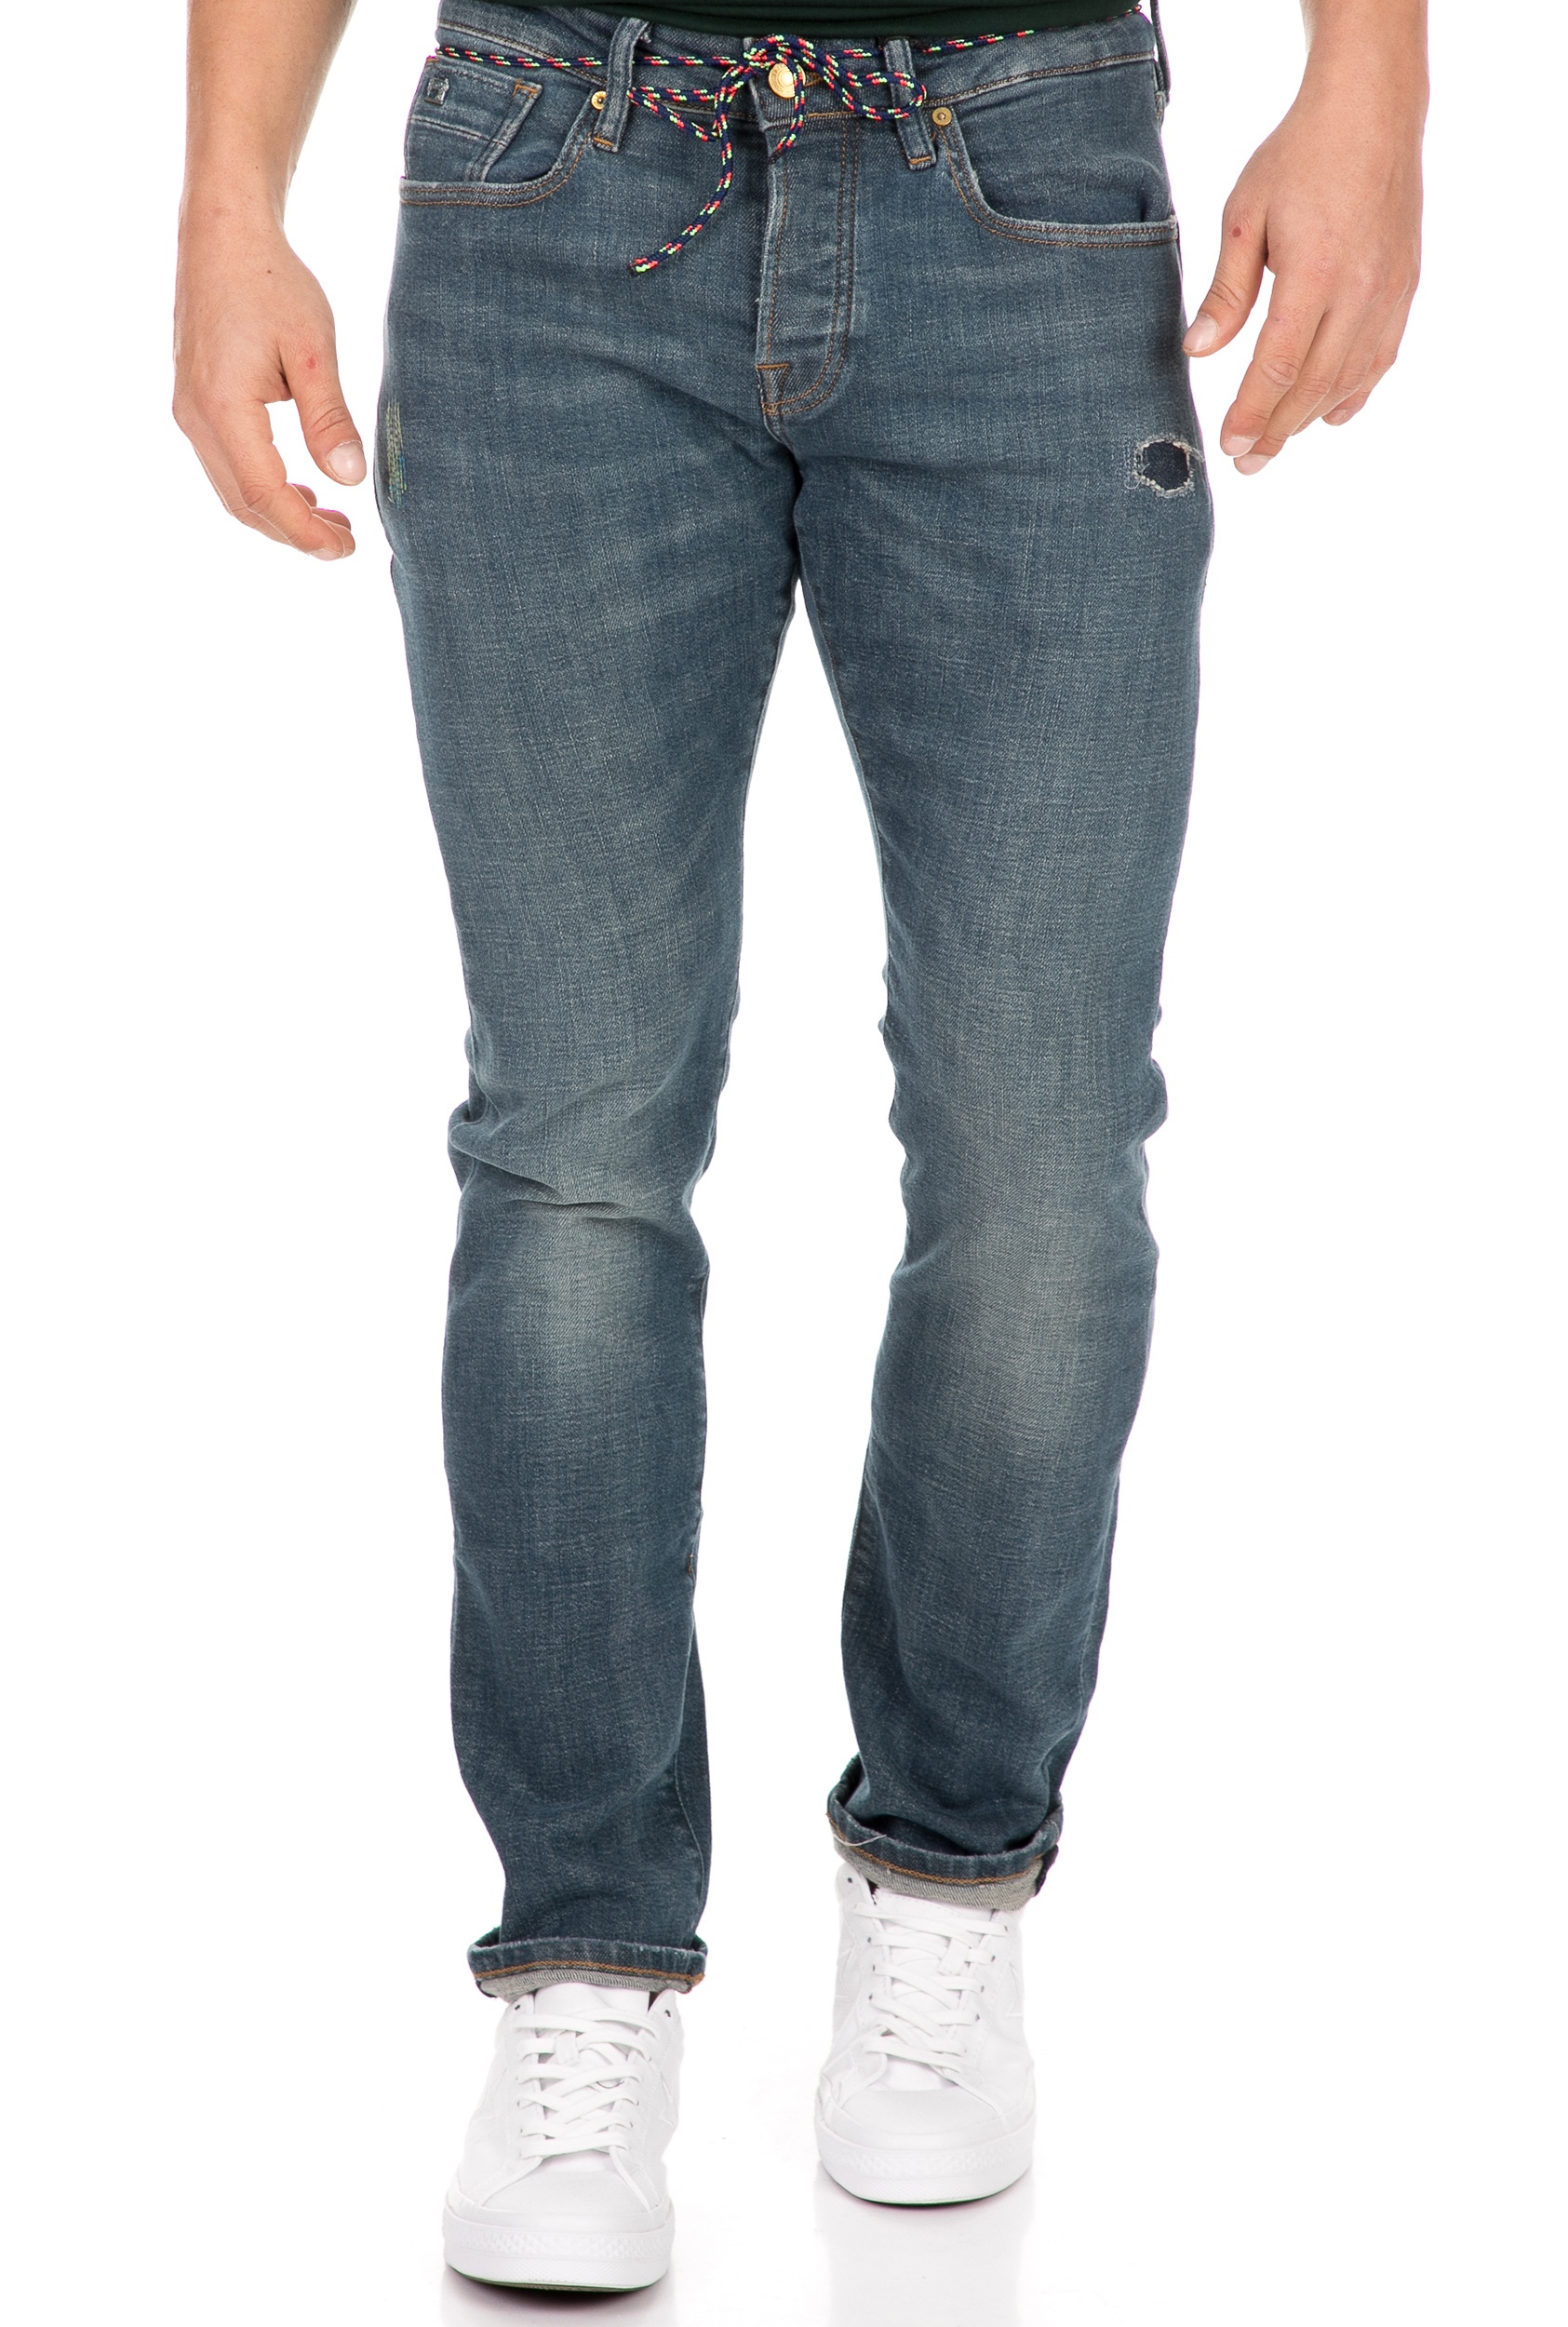 Ανδρικά/Ρούχα/Τζίν/Skinny SCOTCH & SODA - Ανδρικό jean παντελόνι SCOTCH & SODA Ralston Plus - Brushstroke μπλε